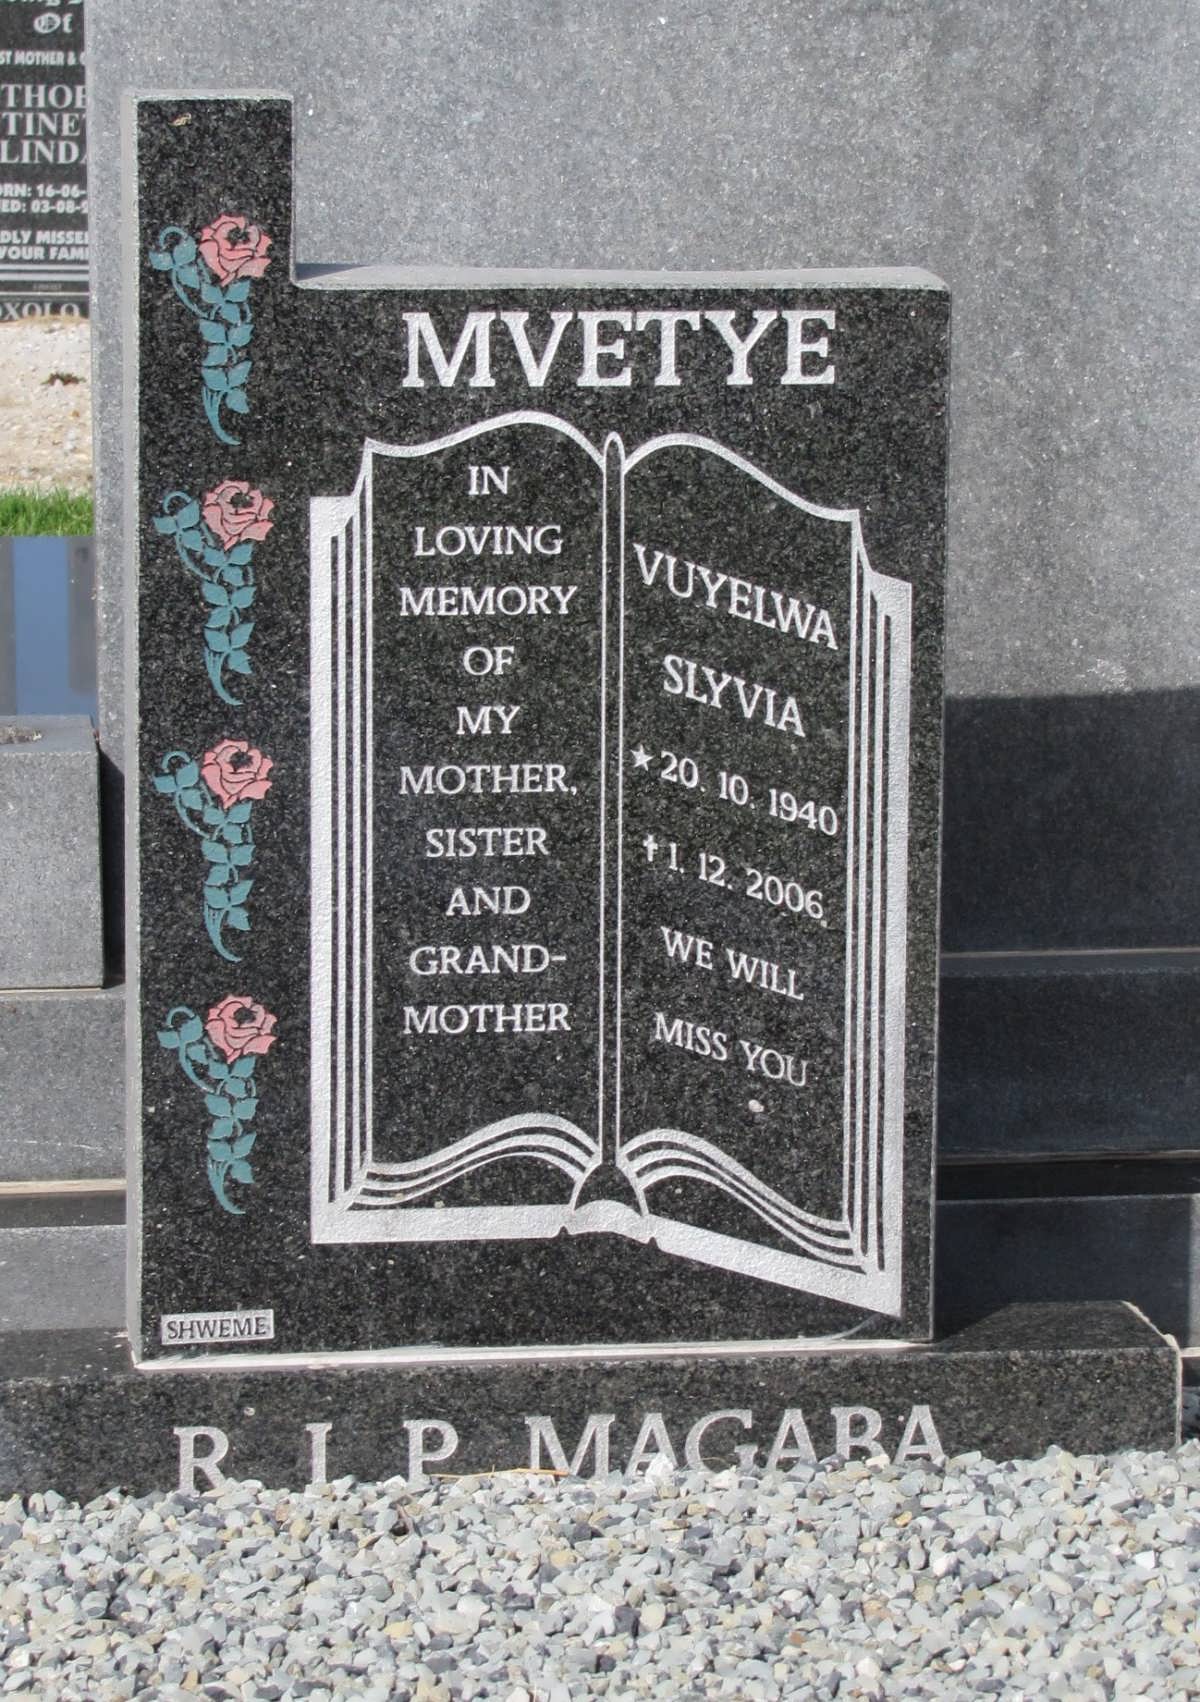 MVETYE Vuyelwa Slyvia 1940-2006